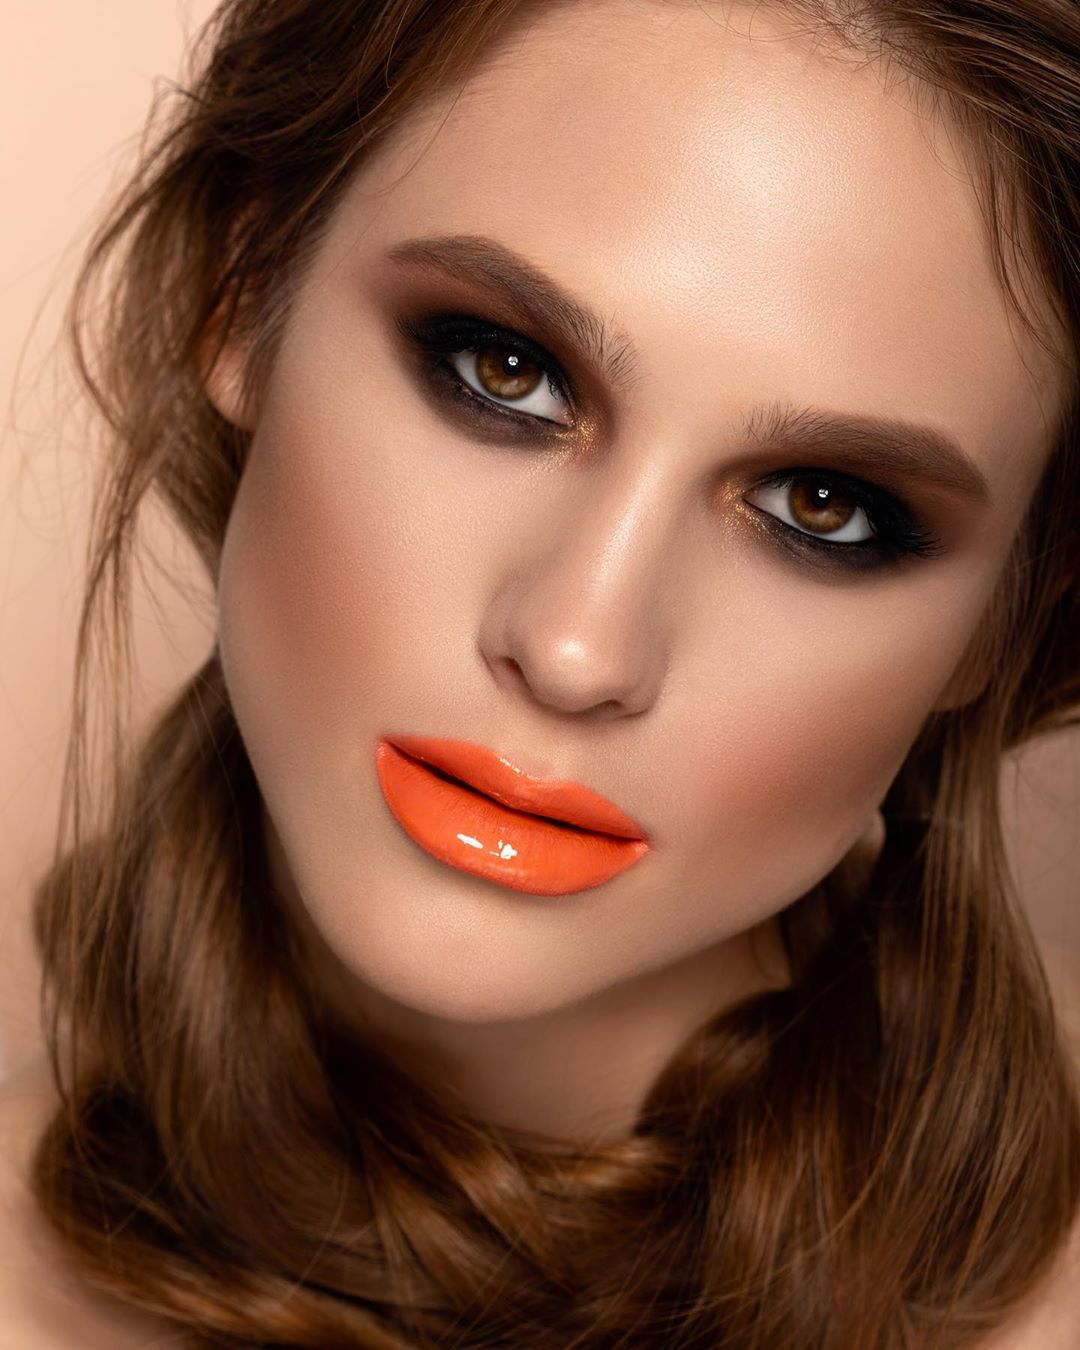 Lady With Stylish Make Up And Orange Lips